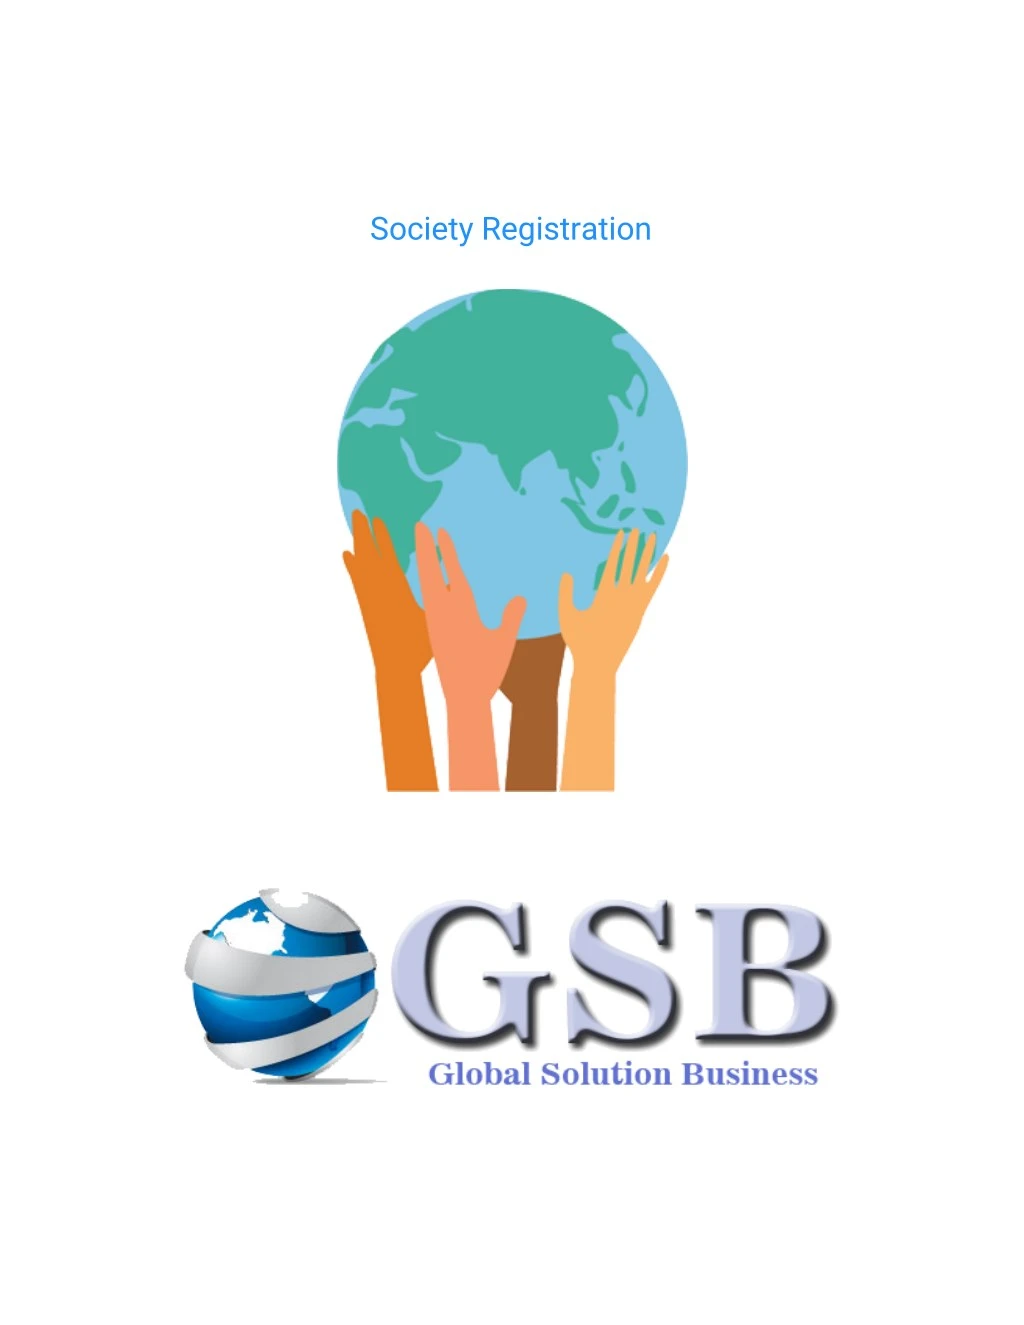 society registration